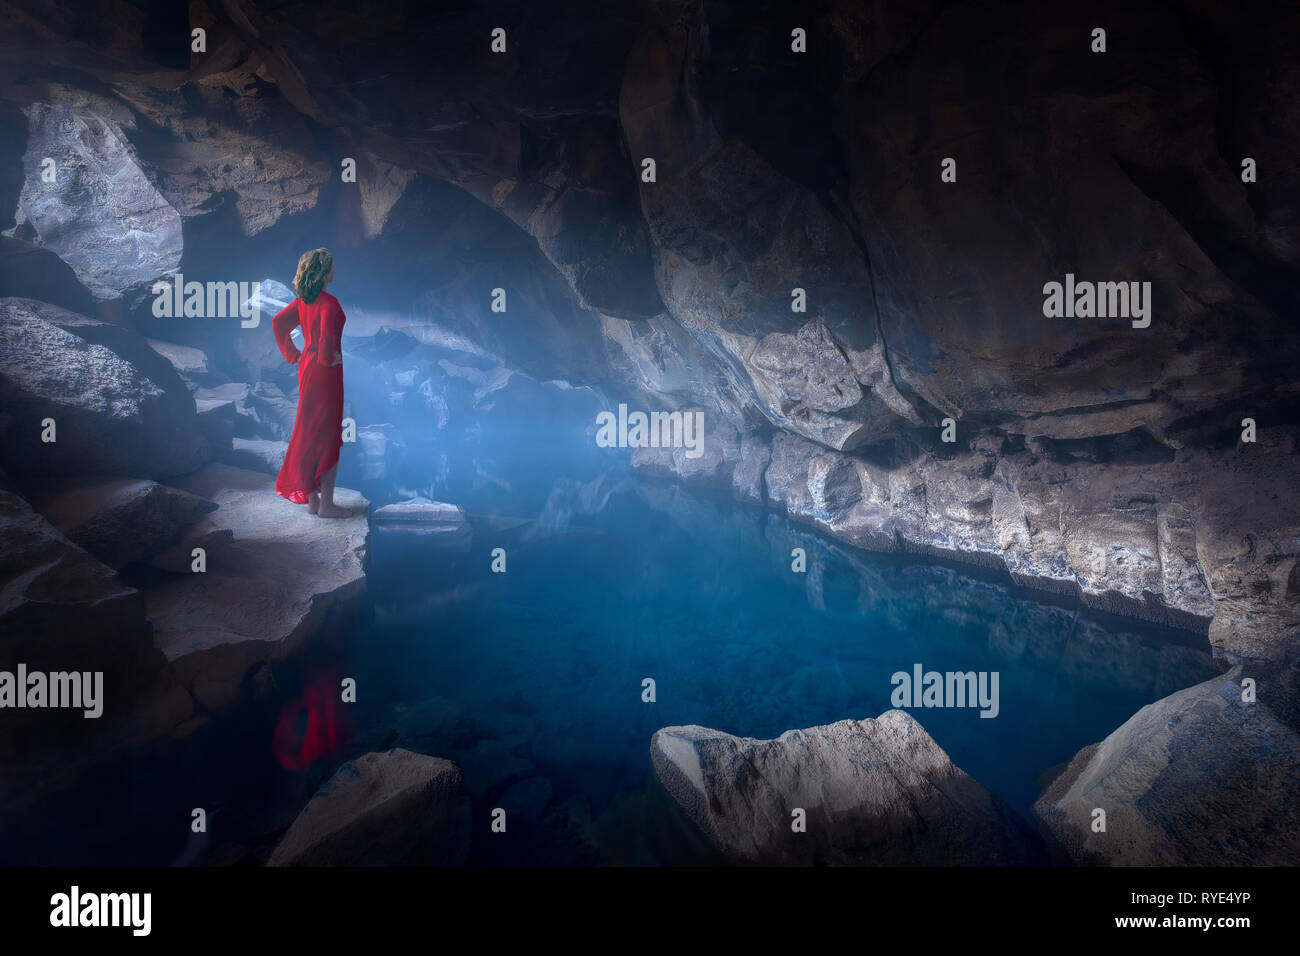 Paysage d'Islande fine art photo de dame en robe rouge trônant fièrement en spooky et misty grotte avec bain d'eau bleue. Banque D'Images